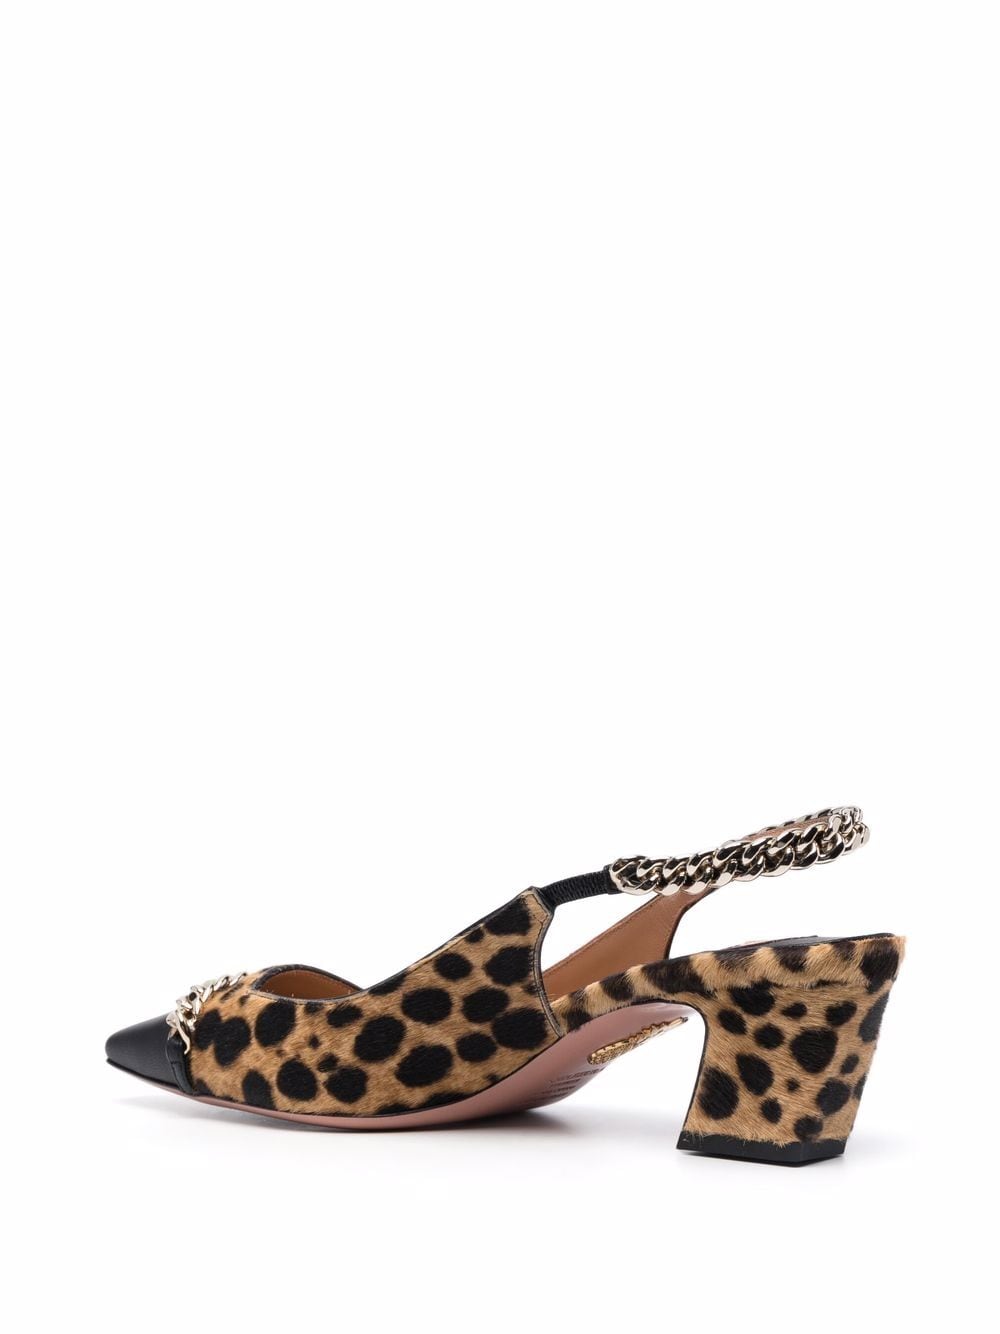 фото Aquazzura туфли с леопардовым принтом